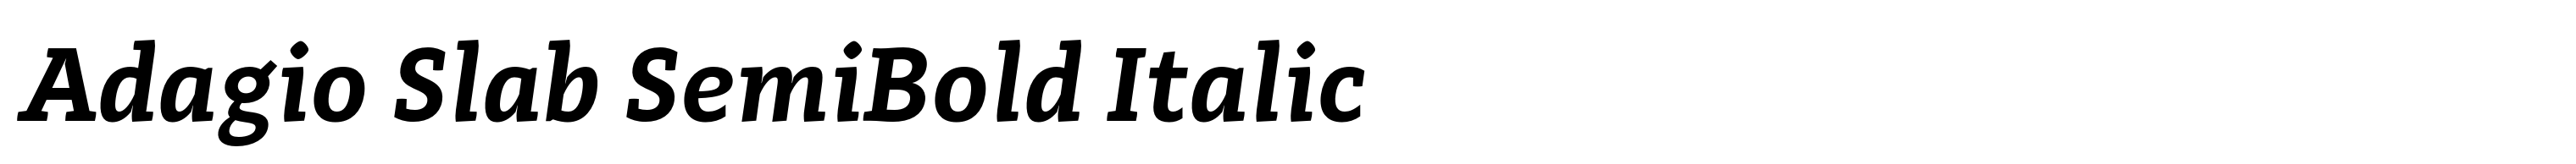 Adagio Slab SemiBold Italic